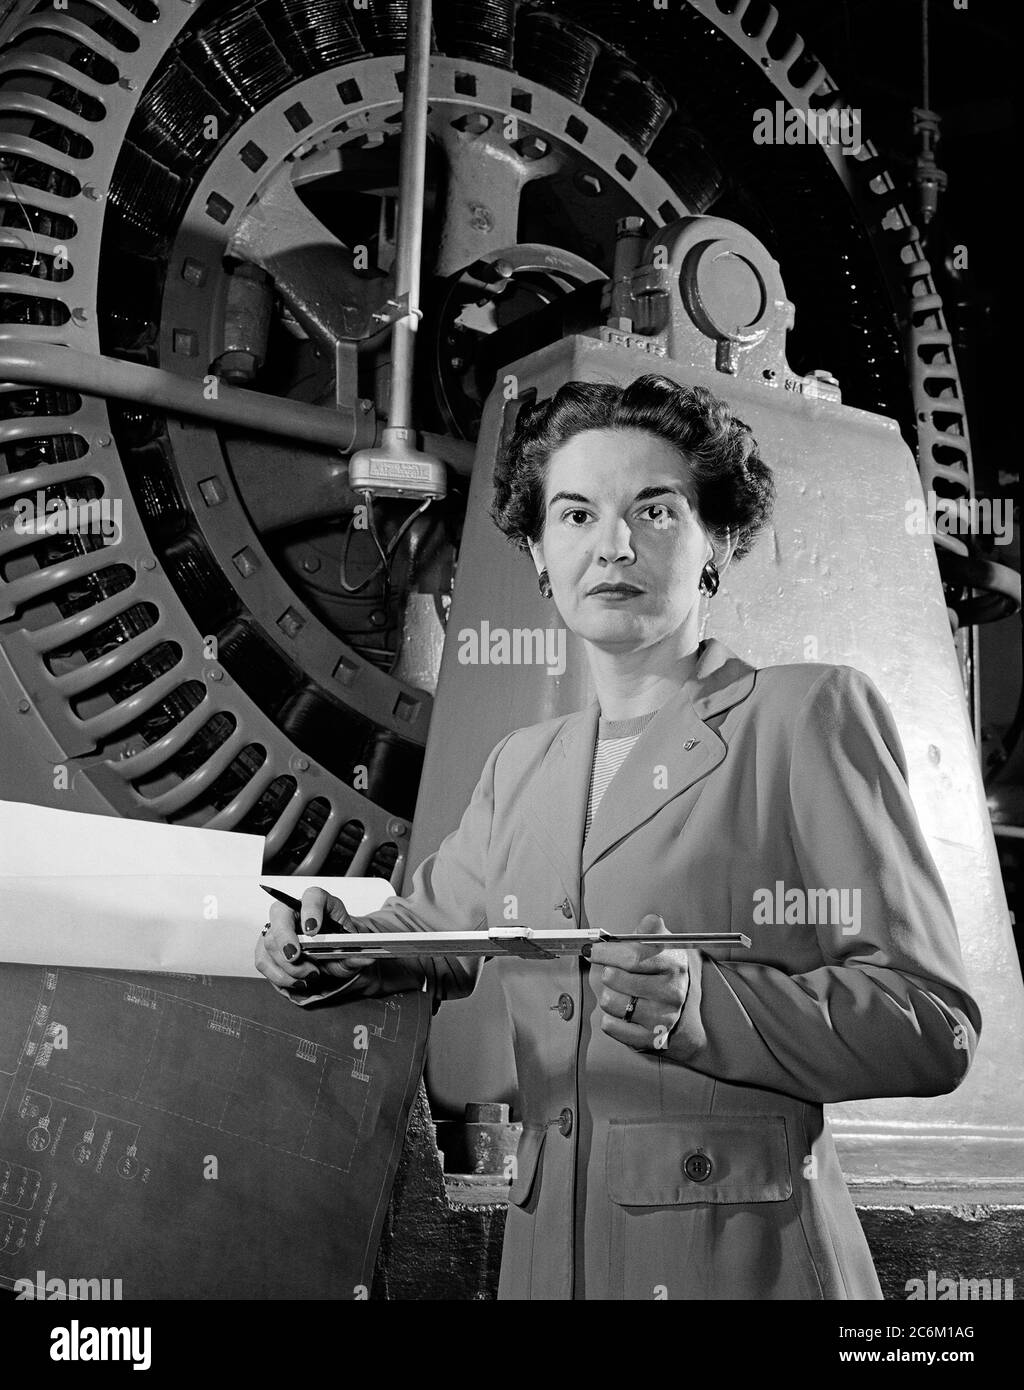 1952, USA: Die amerikanische Elektroingenieurin Frau KITTY Wingfield O'BRIEN JOYNER (1916 - 1993) der NASA, bei der Arbeit, Experte für Elektronik, am LANGLEY FORSCHUNGSZENTRUM. In diesem Foto Analyse des Betriebs einer Windtunnelturbine bei NACA Langley im Jahr 1952 . Erinnert wie die erste Frau Ingenieur am Memorial Langley Aeronautical Laboratory . - NASA - N.A.S. - die Nationale Luft- und Raumfahrtbehörde - foto storiche - foto storica - scienziato - Wissenschaftler - INGEGNERE DONNA - INGEGNERIA ELETTRONICA - DONNE DONNA - AL LAVORO - AERONAUTICA - REGOLO MATEMATICO ALGEBRICO LOG Stockfoto